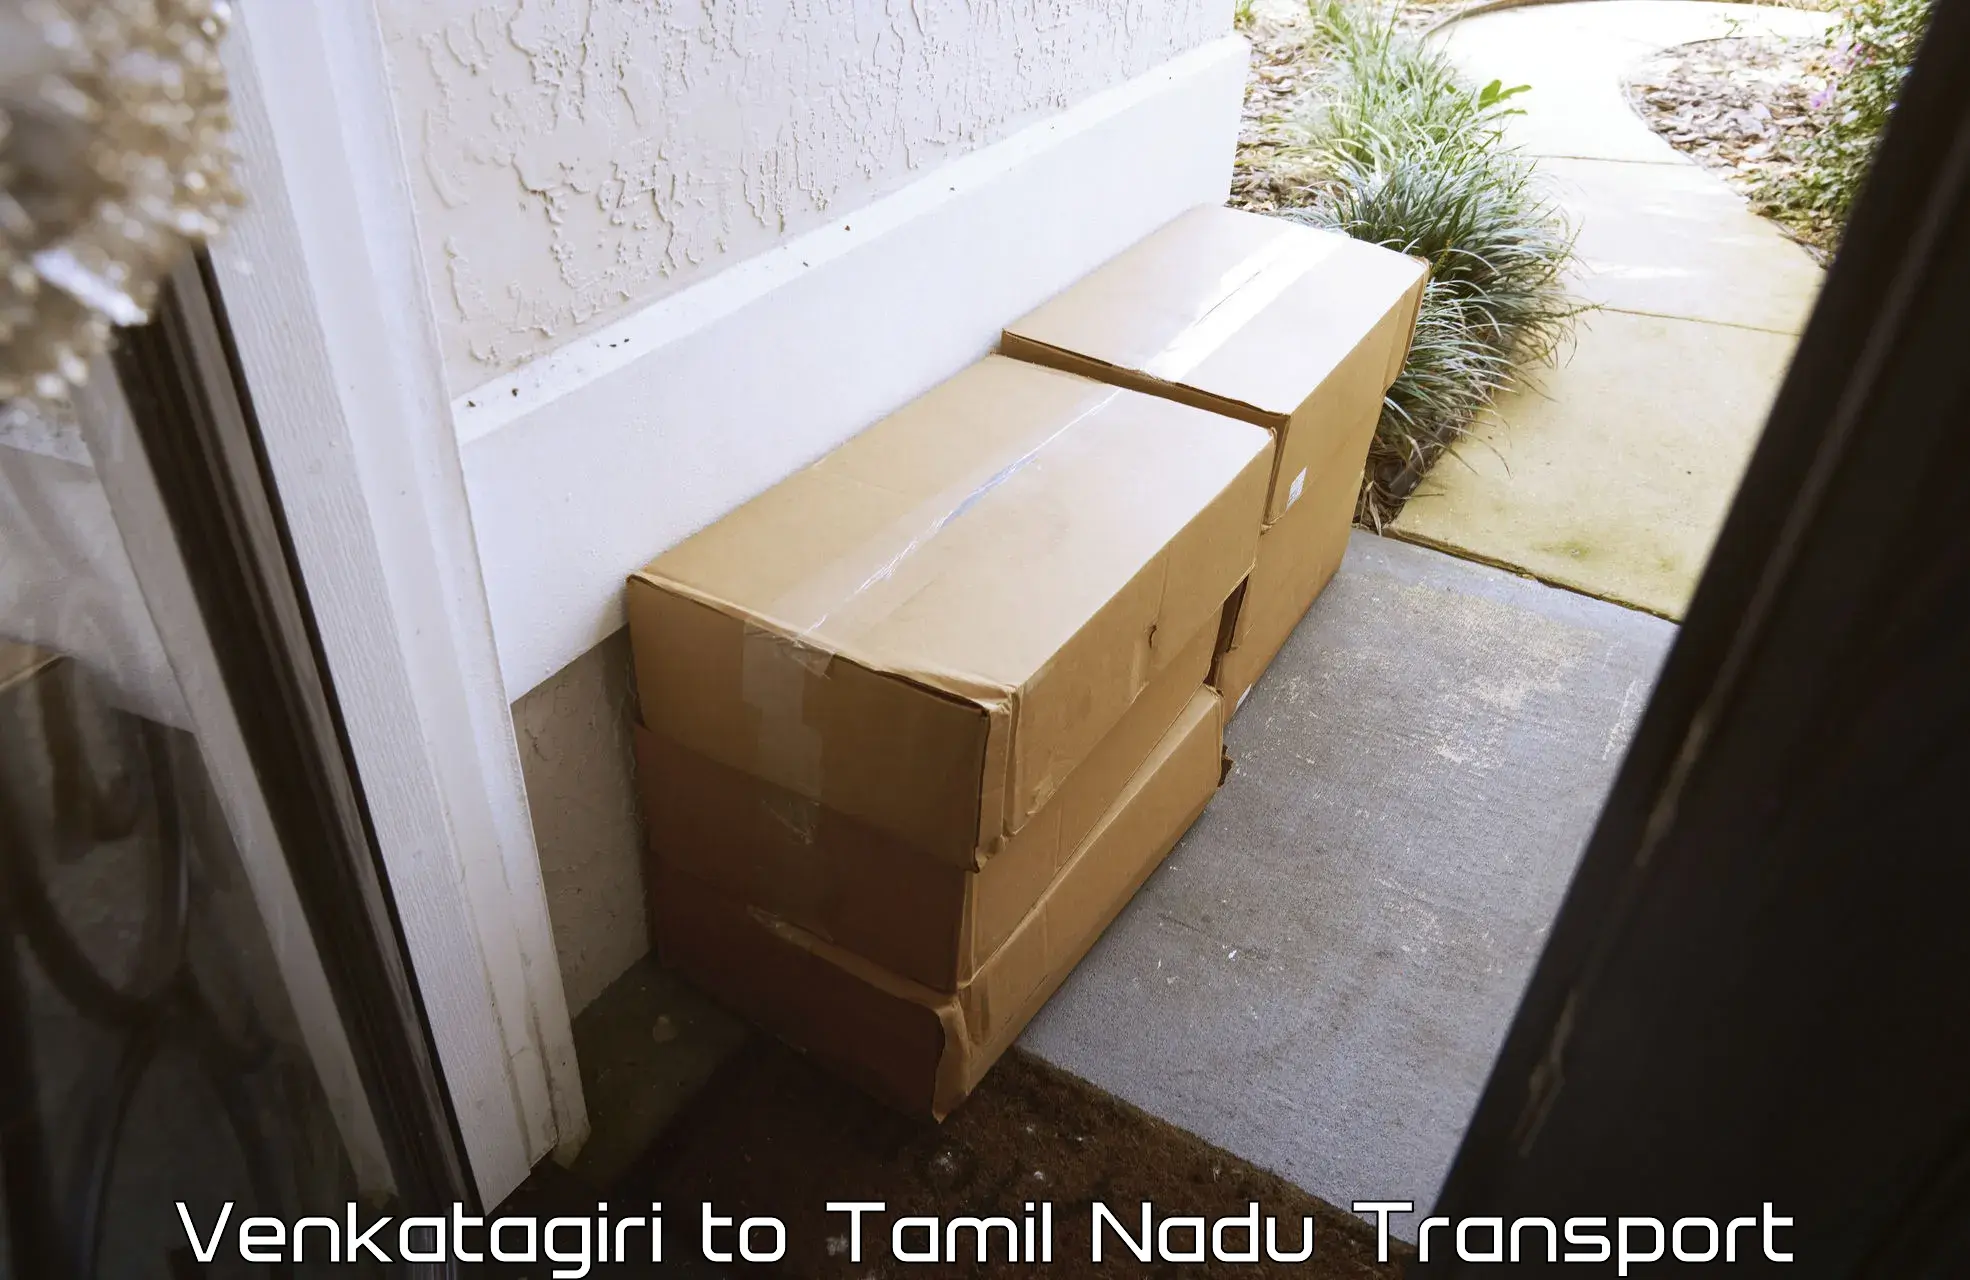 Cargo train transport services Venkatagiri to Turaiyur